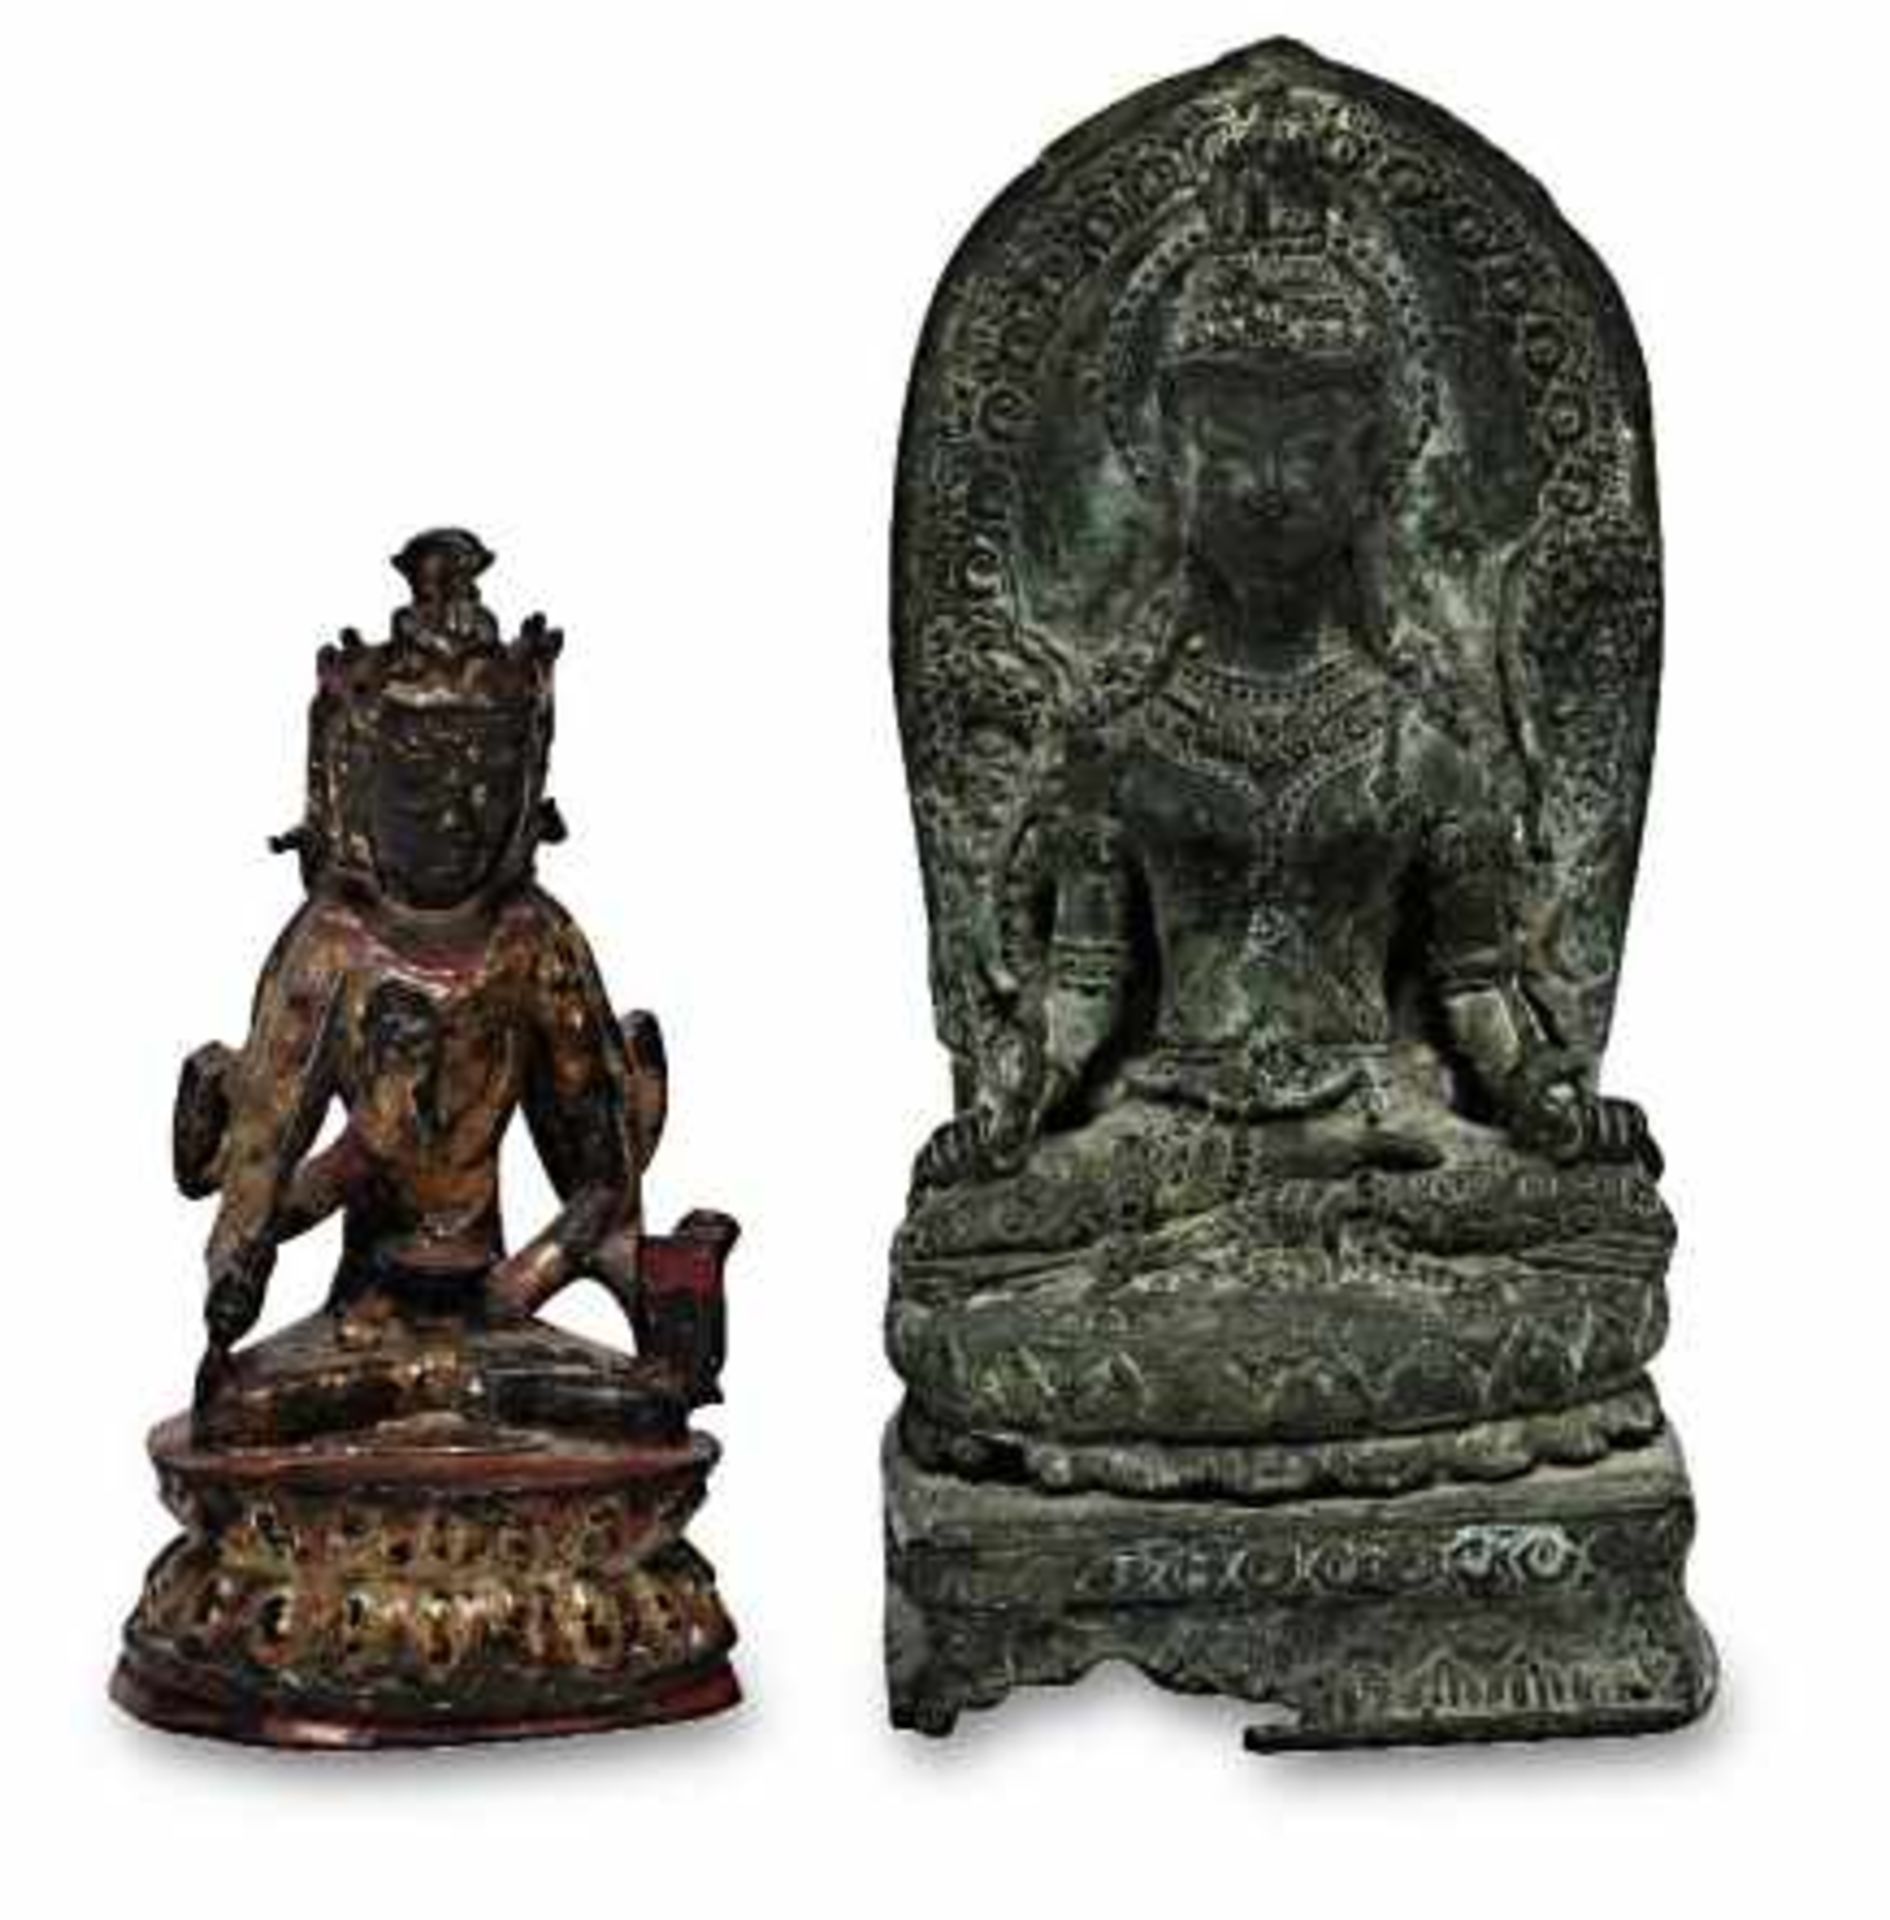 BodhisattvaChina Kupferbronze mit Lackfassung. Mit drei Gesichtern und ehemals sechs Armen, in den